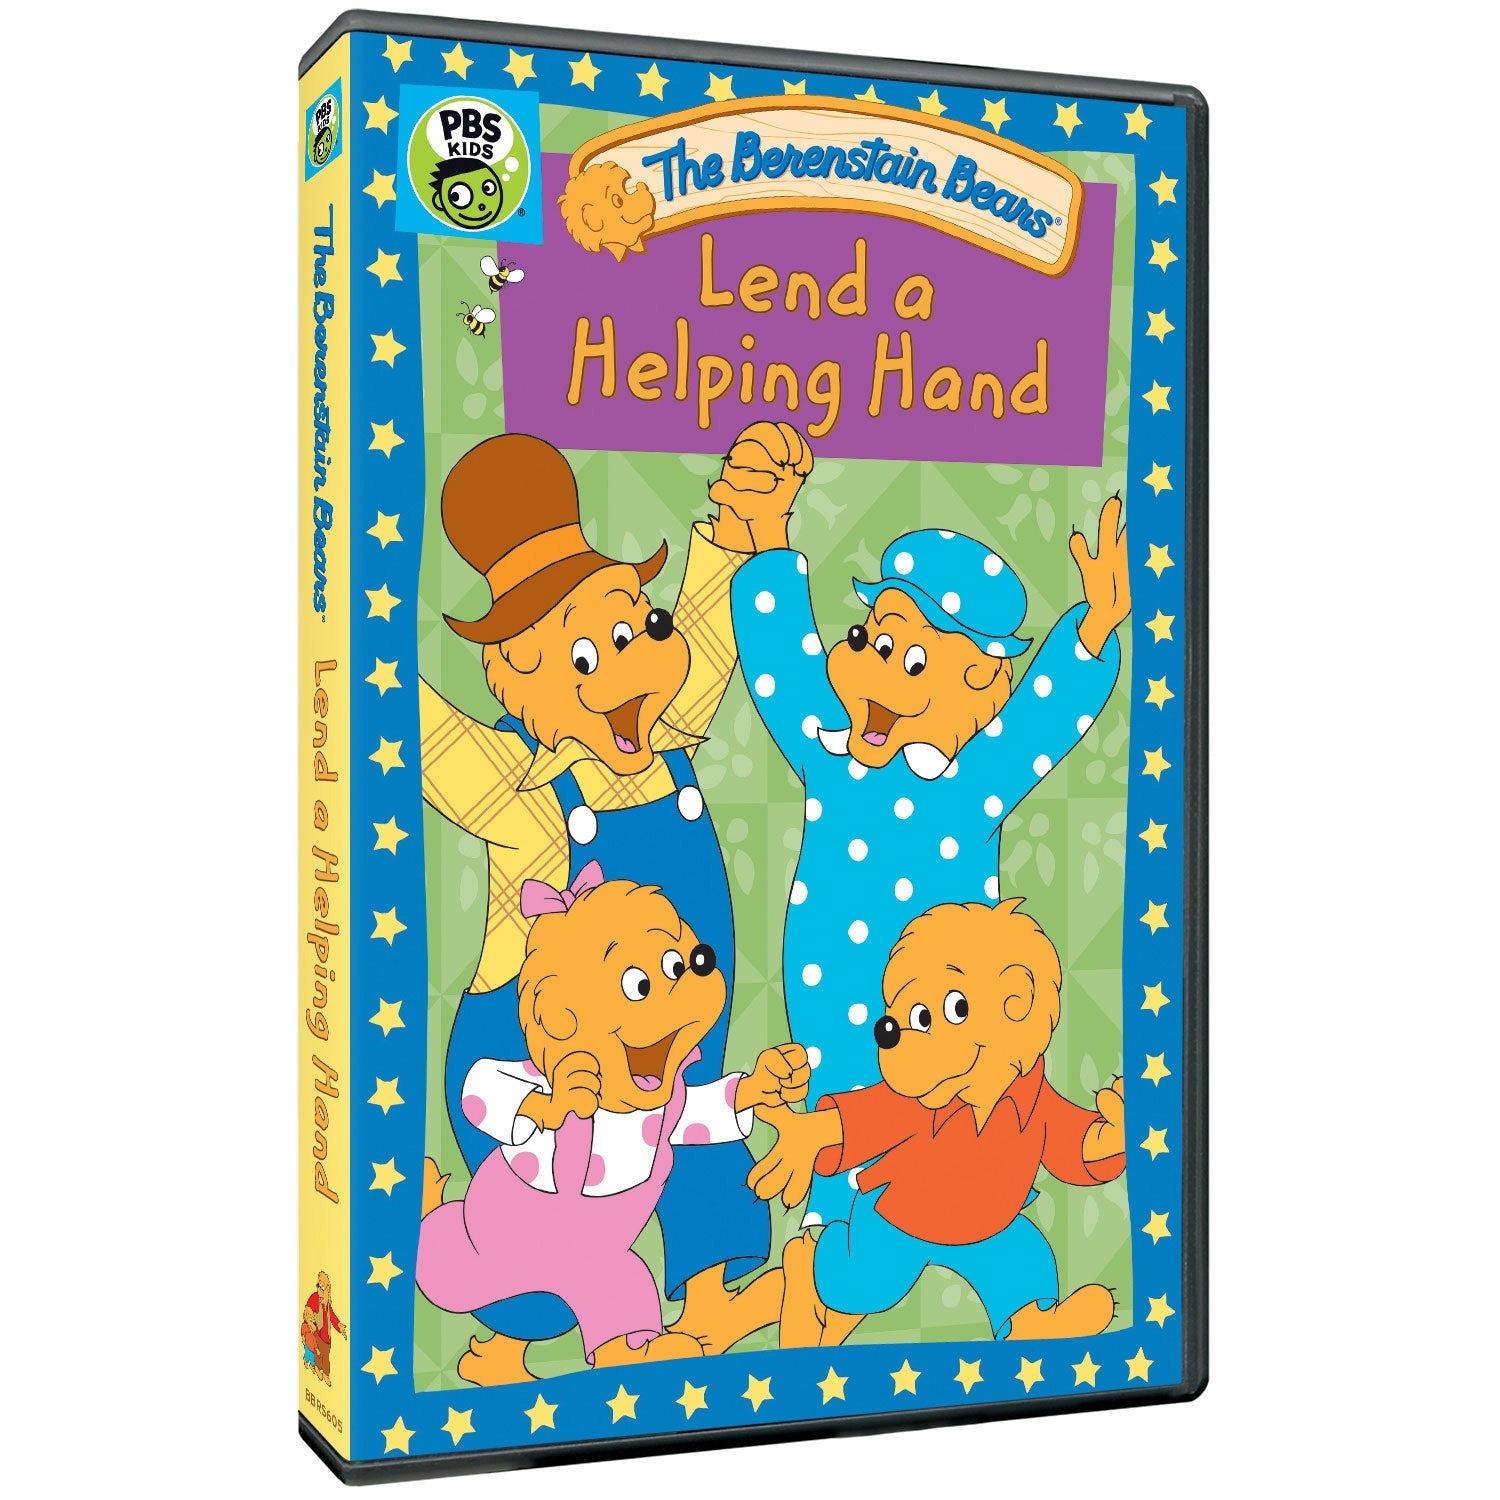 Berenstain Bears - Lend a Helping Hand (DVD)